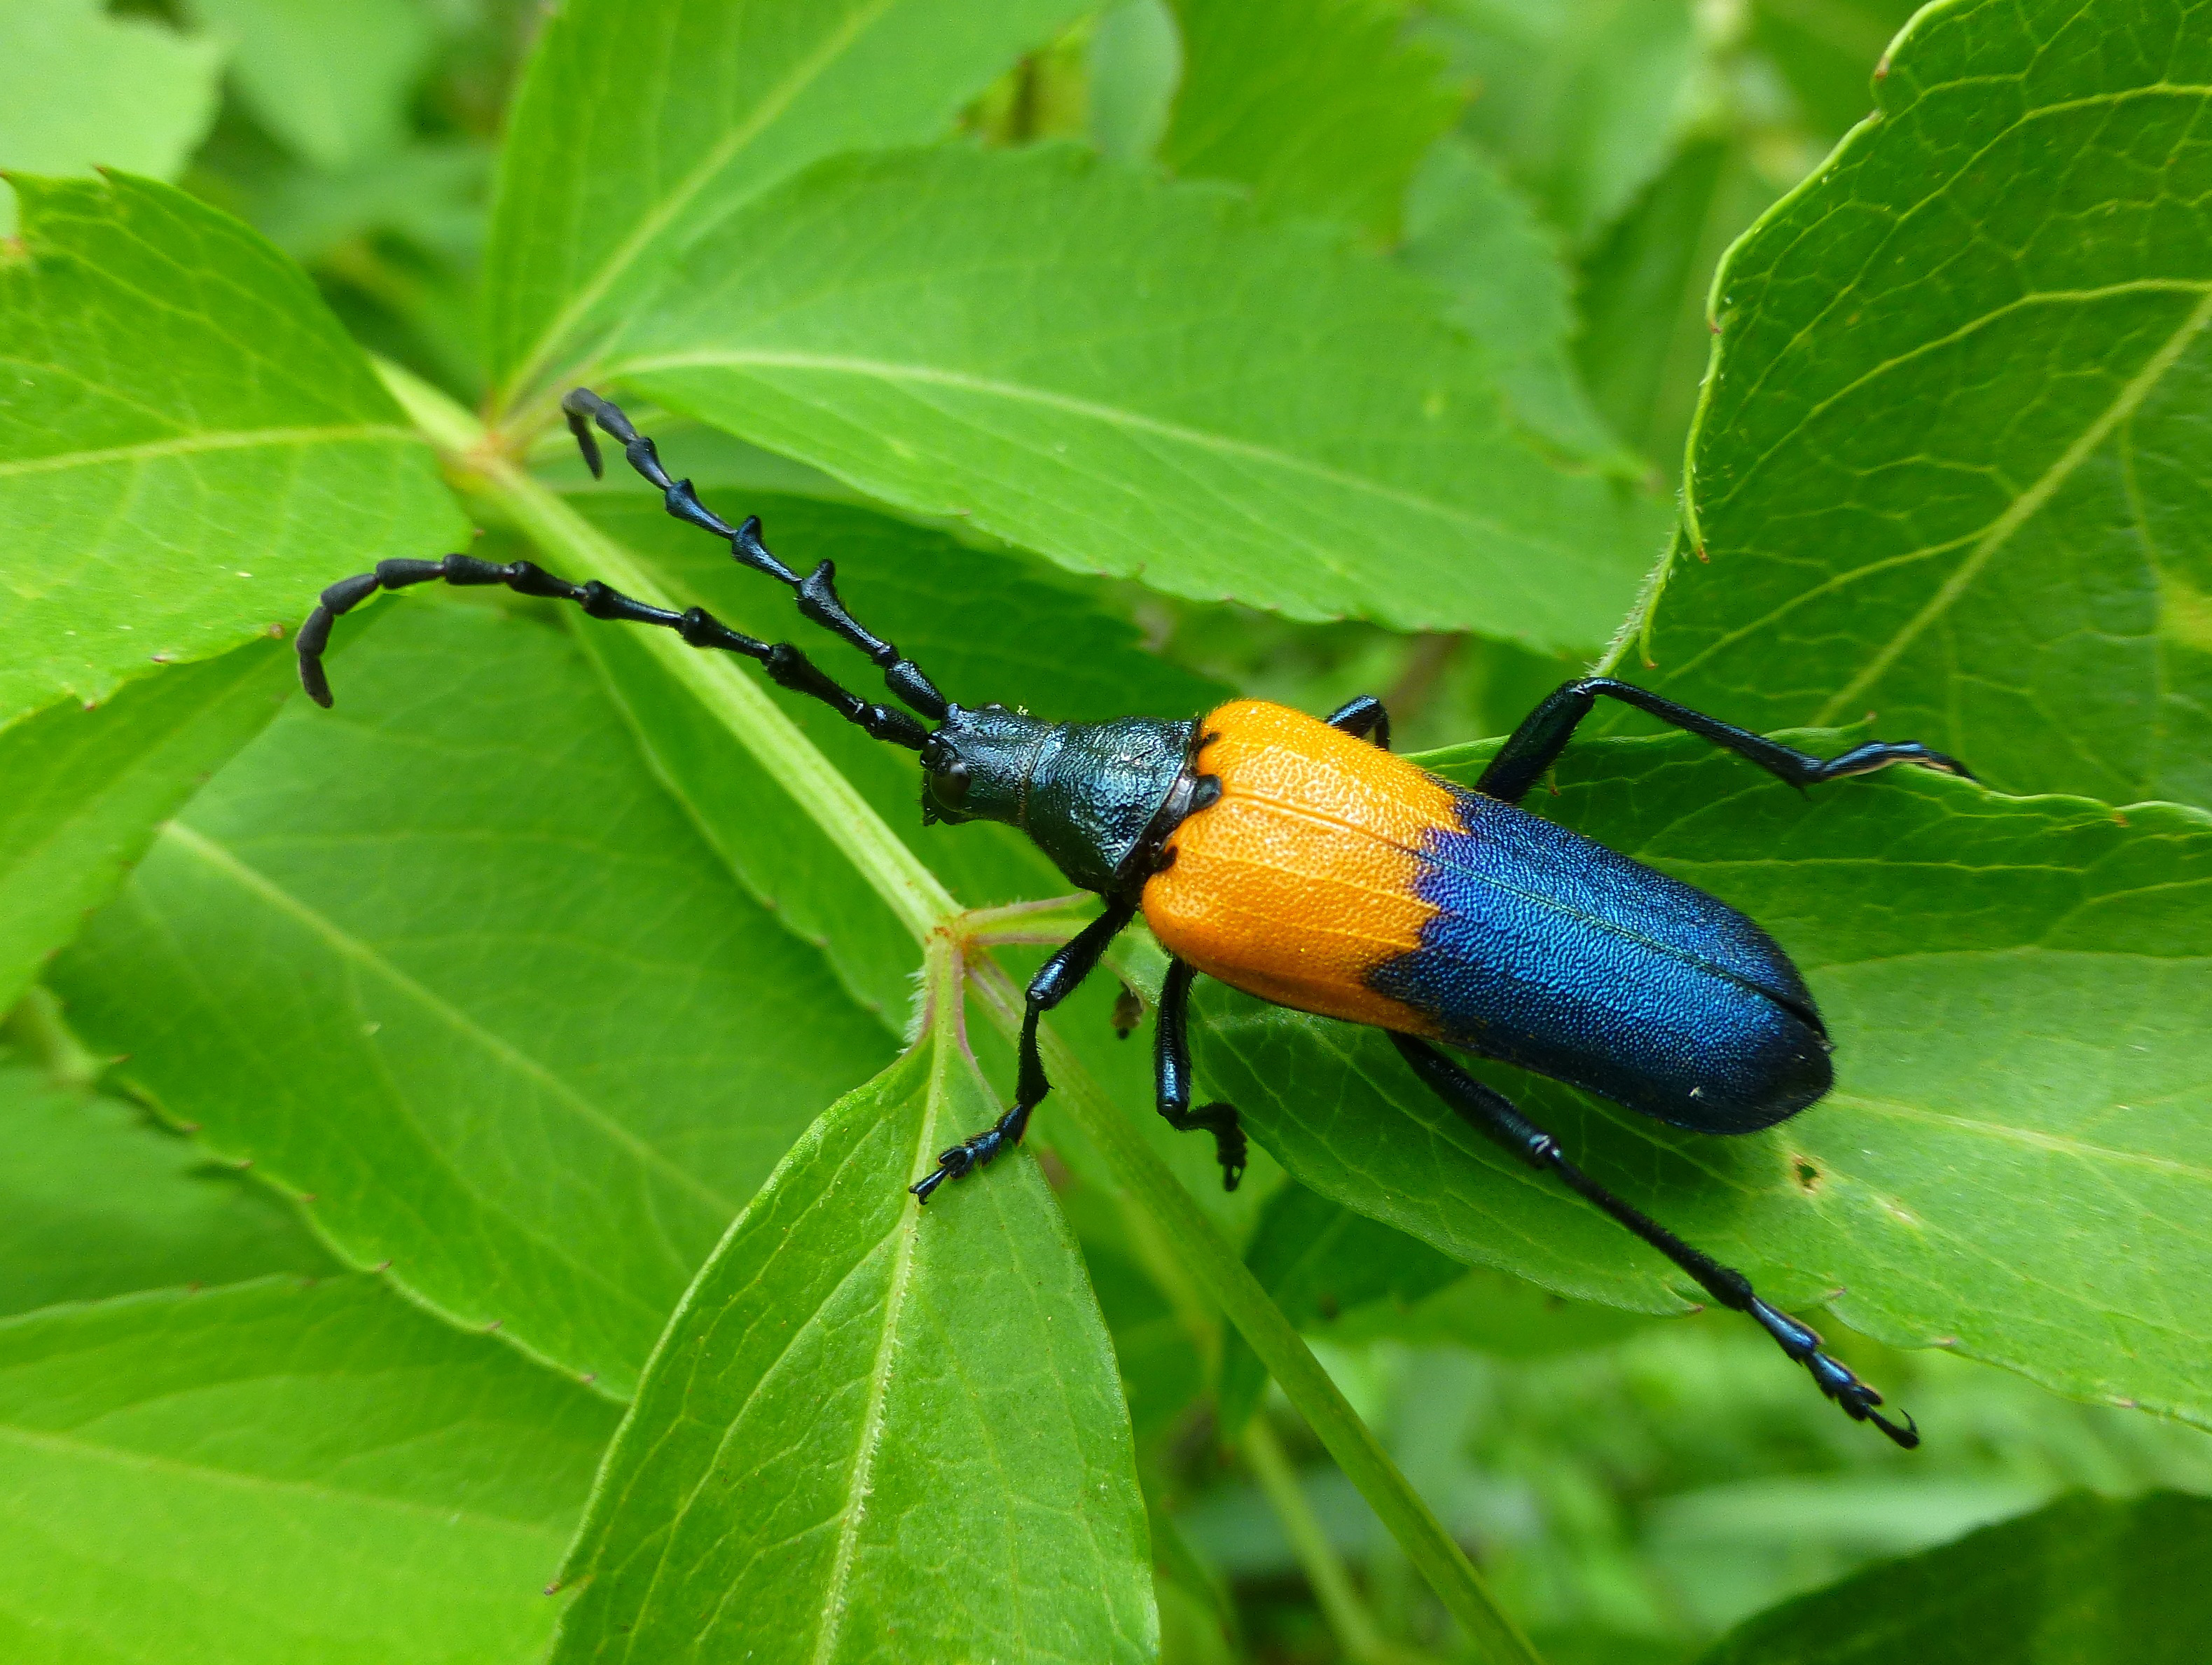 Wild and Wonderful Insects of New England | Uconnladybug's Blog